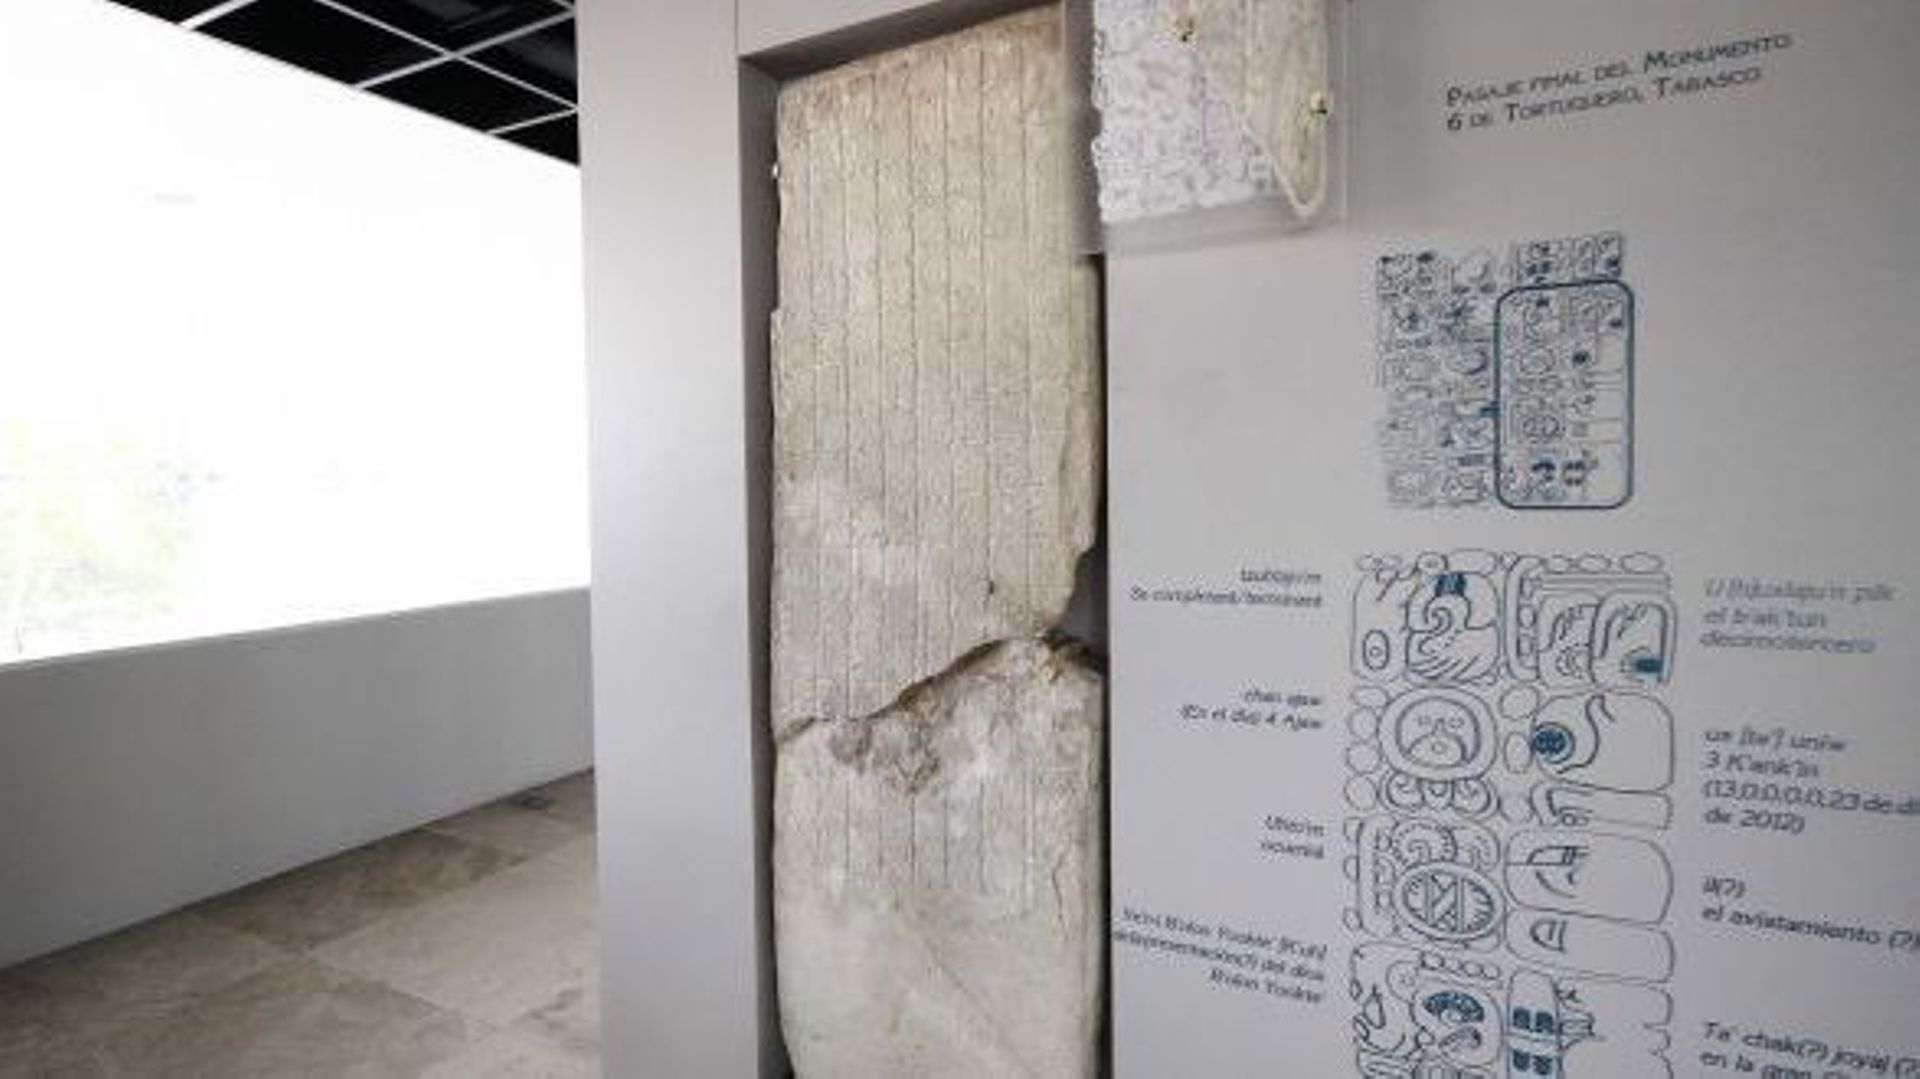 La pierre maya numéro 6 au musée de Tabasco